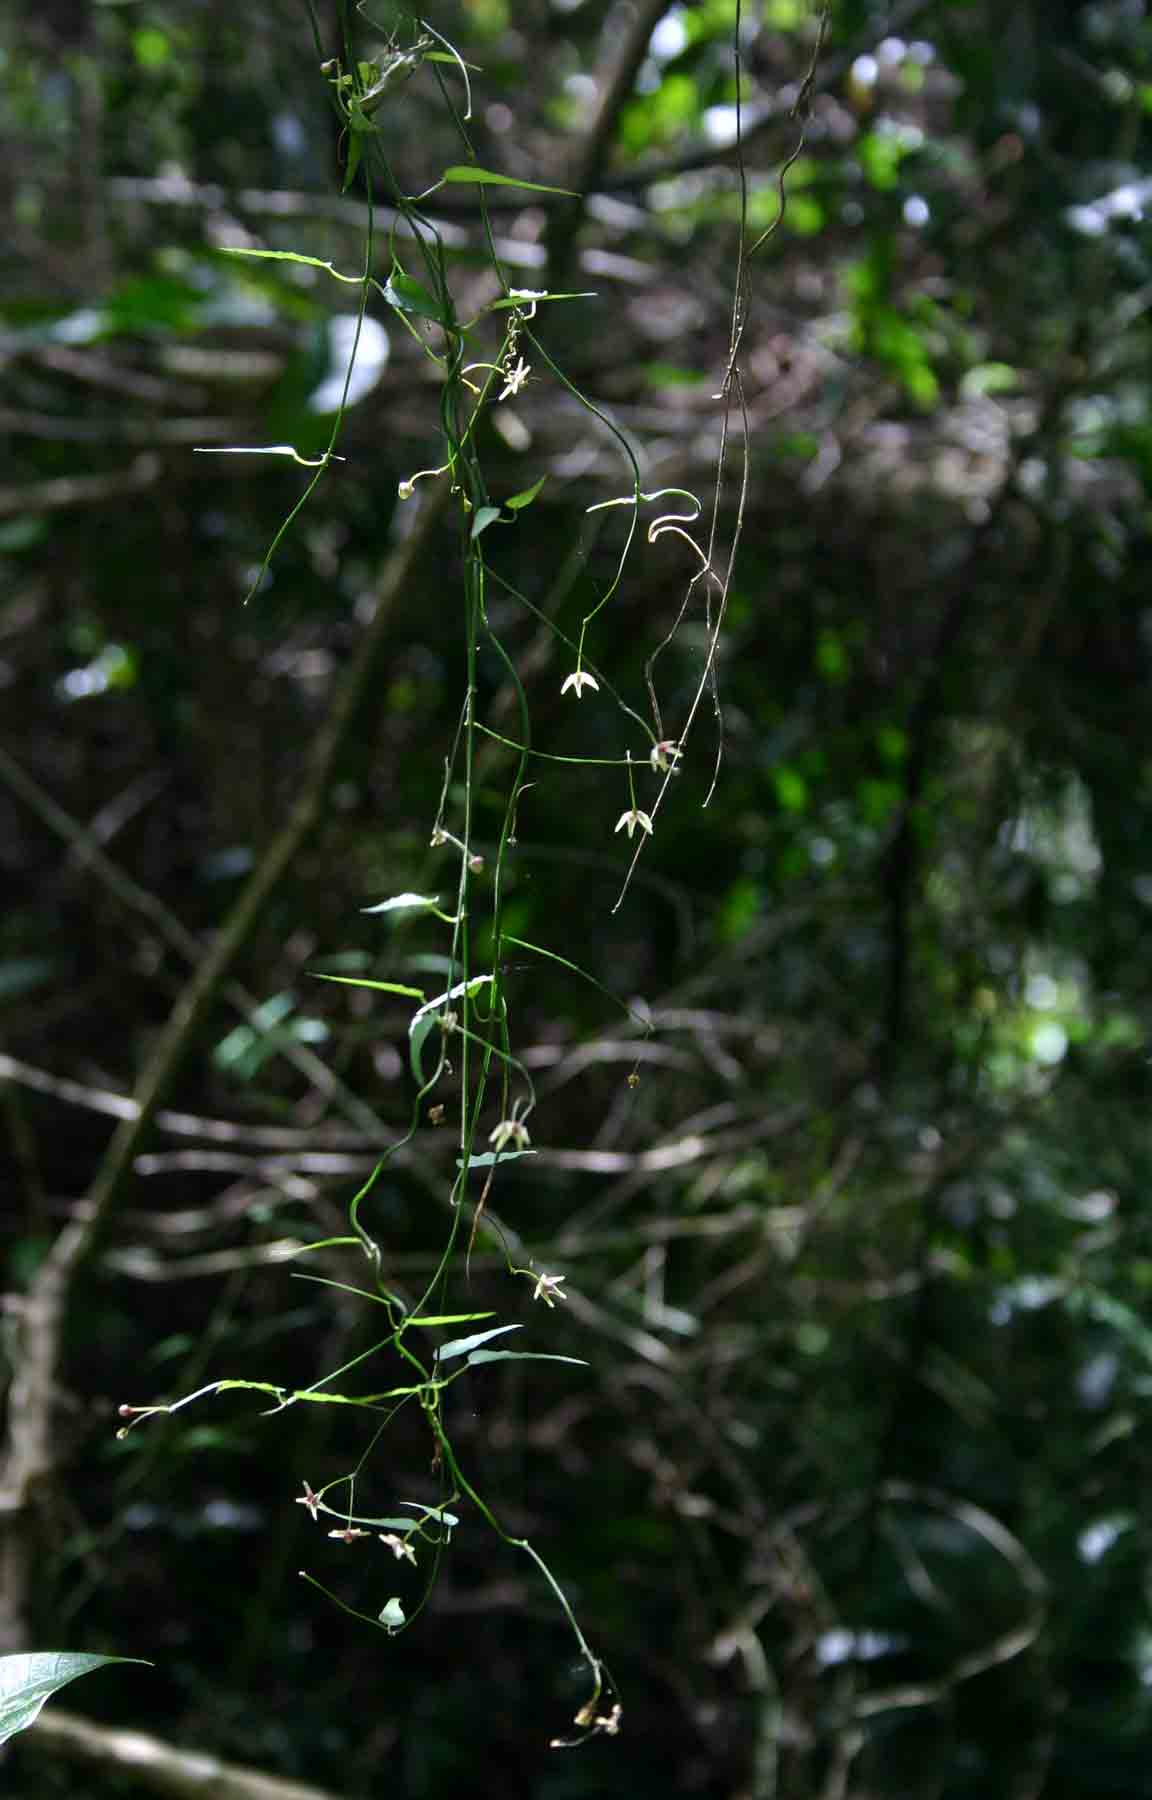 Vincetoxicum monticola